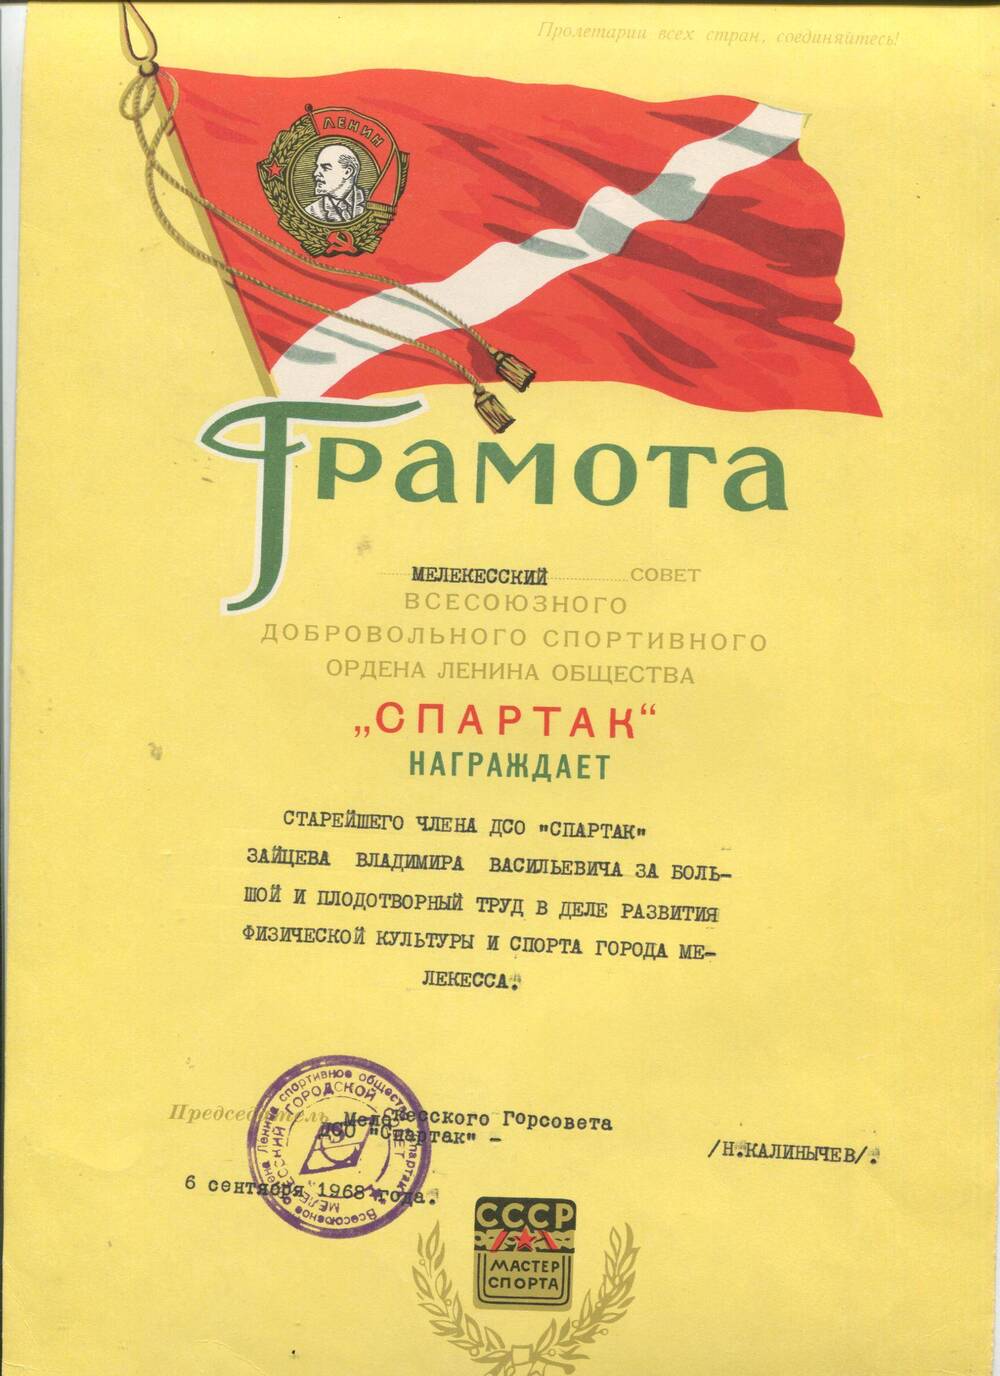 Грамота вручена Зайцеву В.В. г.Мелекесс, 6 сентября 1968 г.